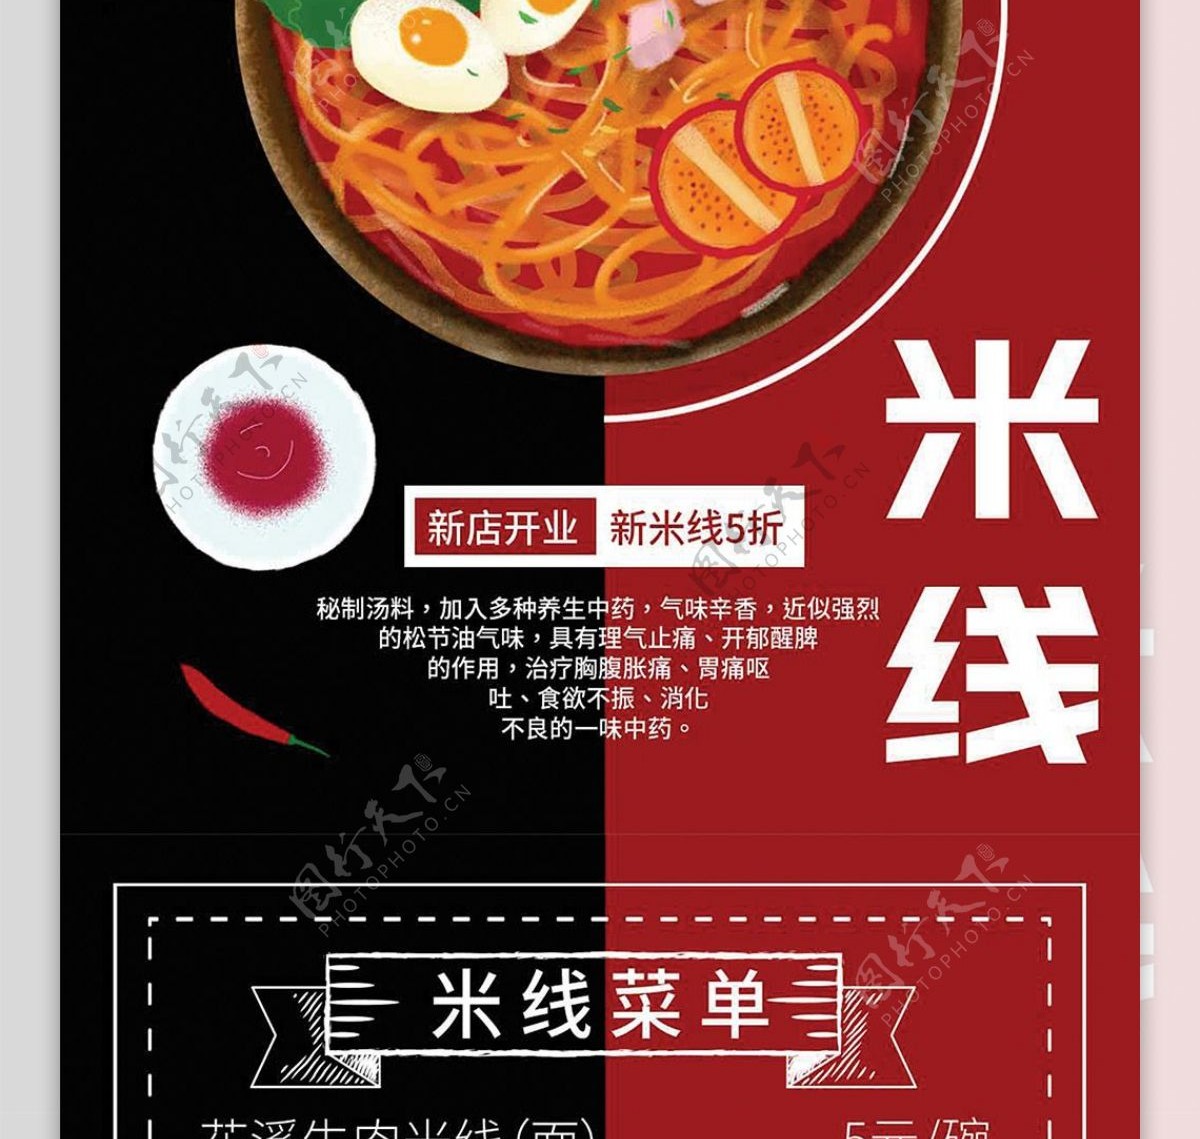 红色简约大气砂锅米线菜谱设计